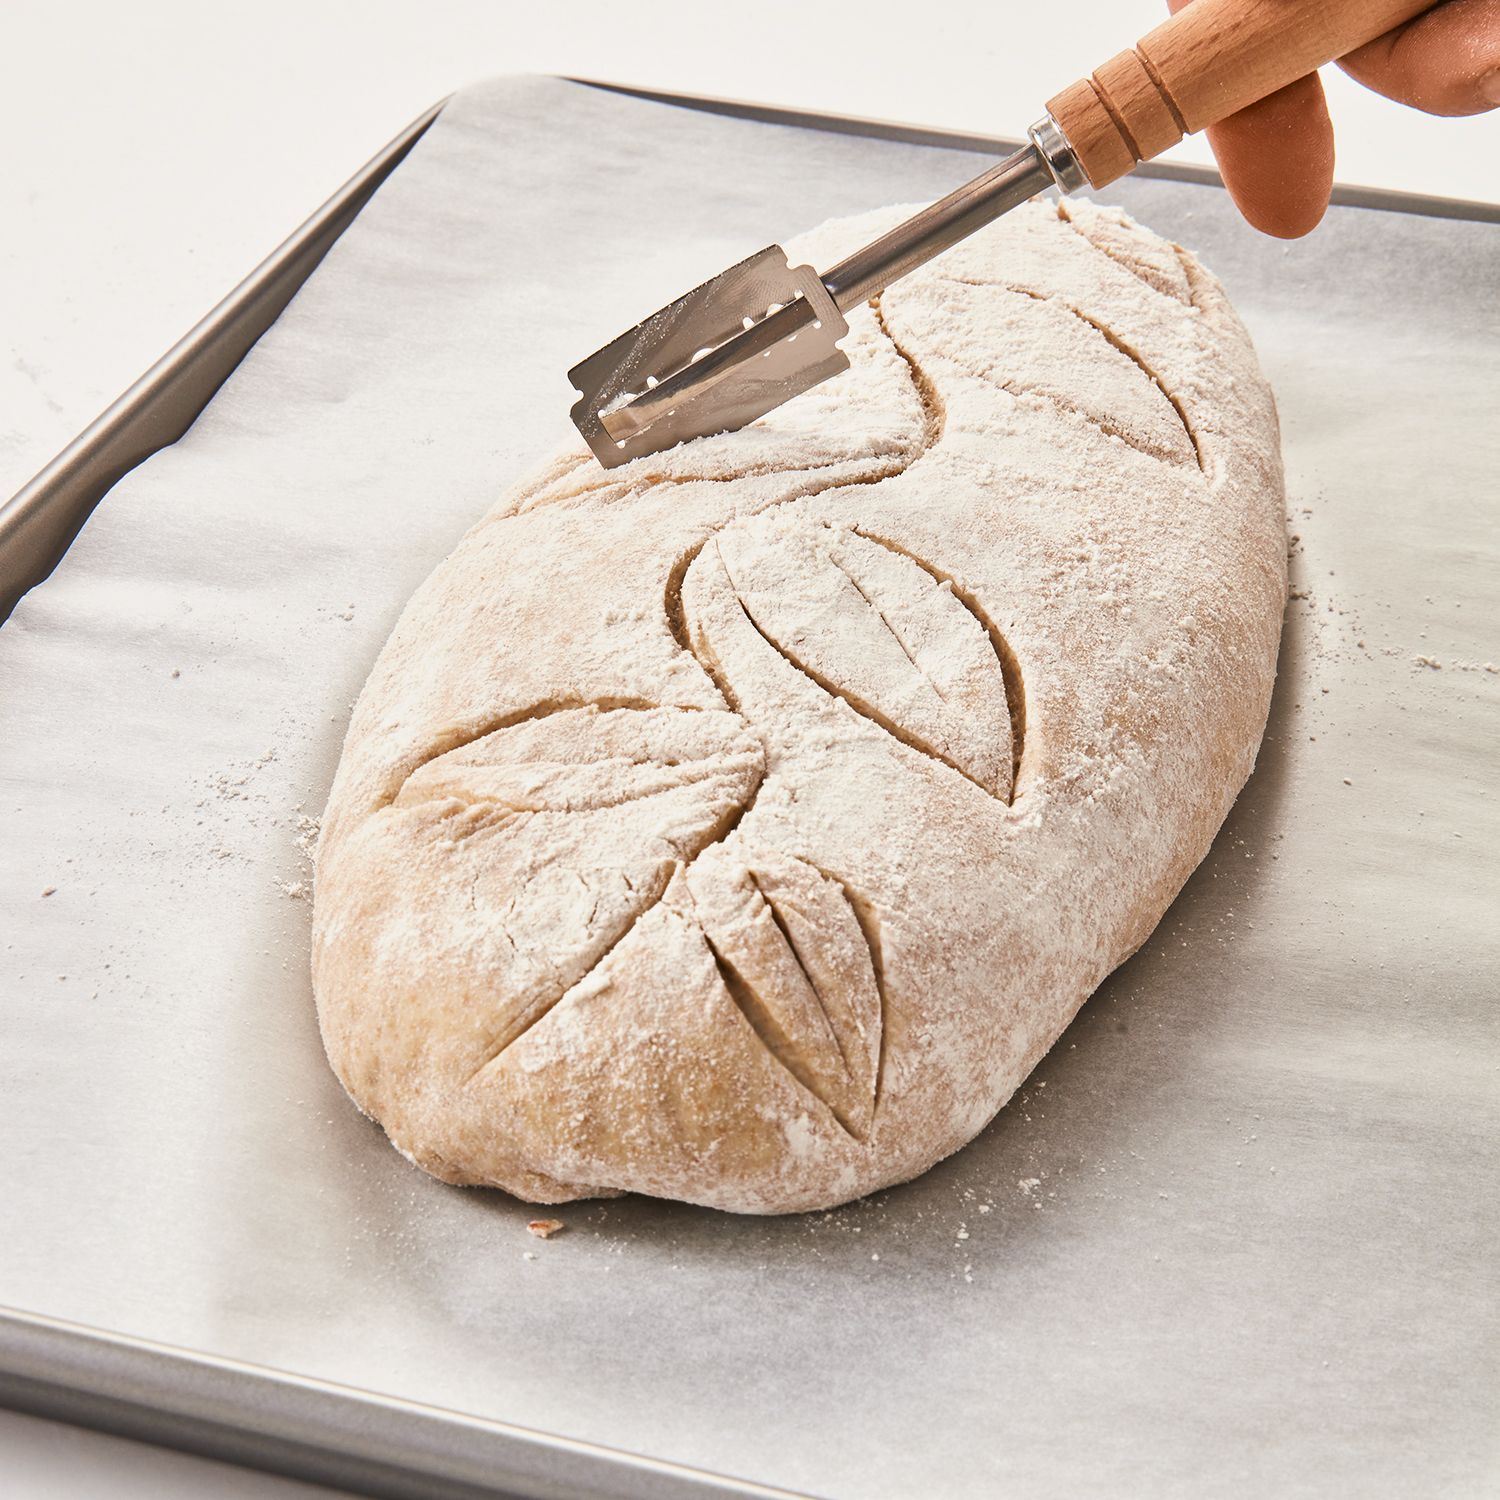 Laib & Seele Bäckermesser Teigmesser Brot einschneiden Teigritzmesser Bäcker Klinge Brotmuster mit Holzgriff 5 Klingen und Schutzhülle